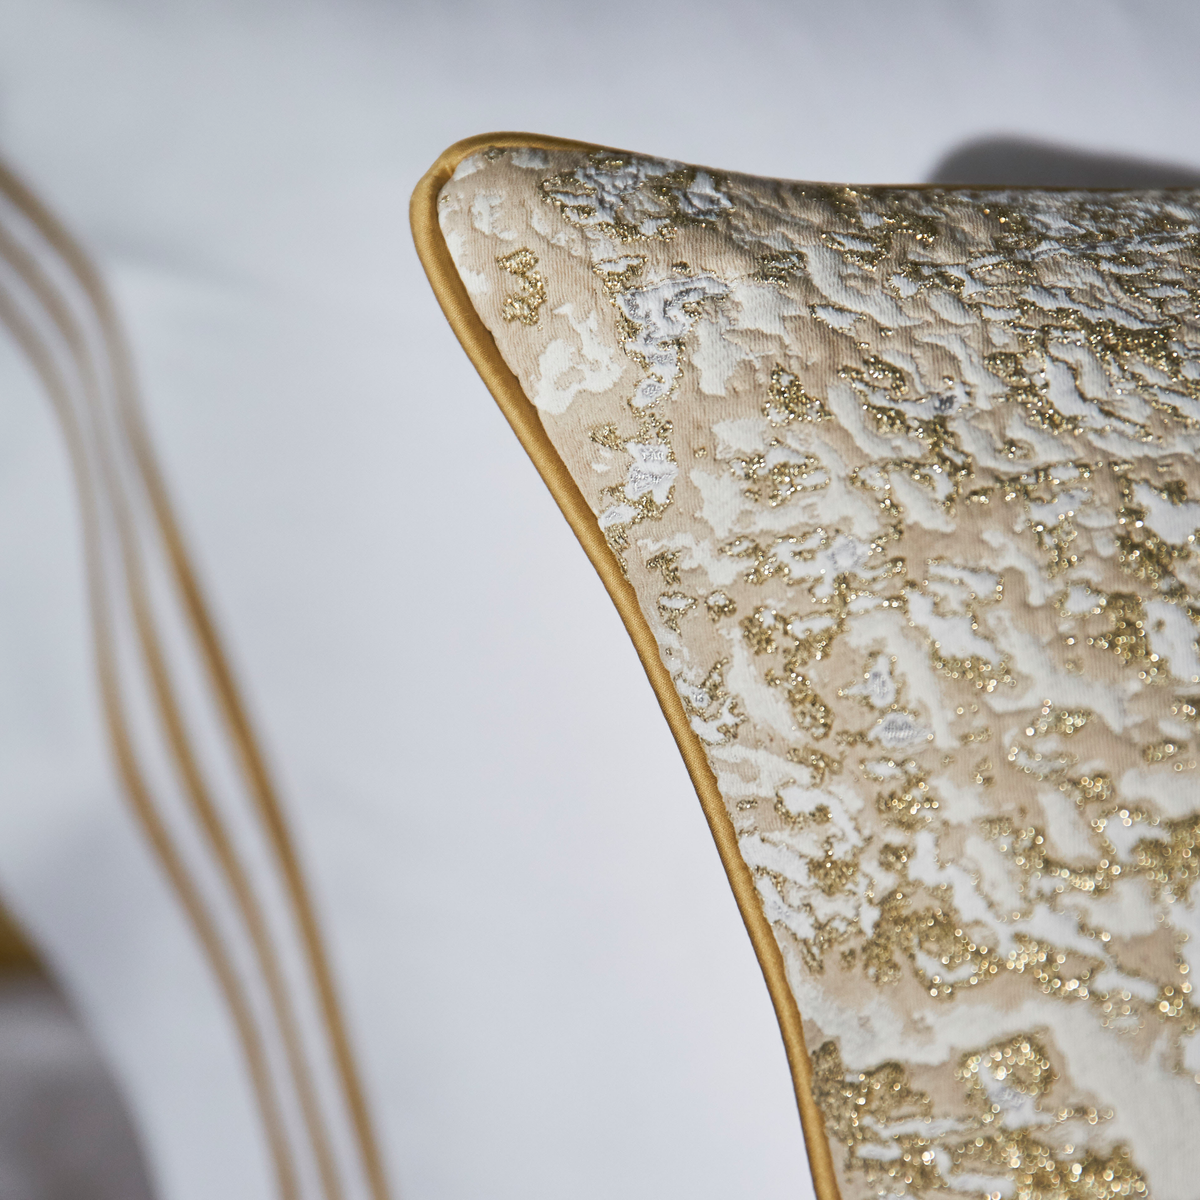 Pillowcase Edge Closeup of Celso de Lemos Waltz Bedding in Miel Color